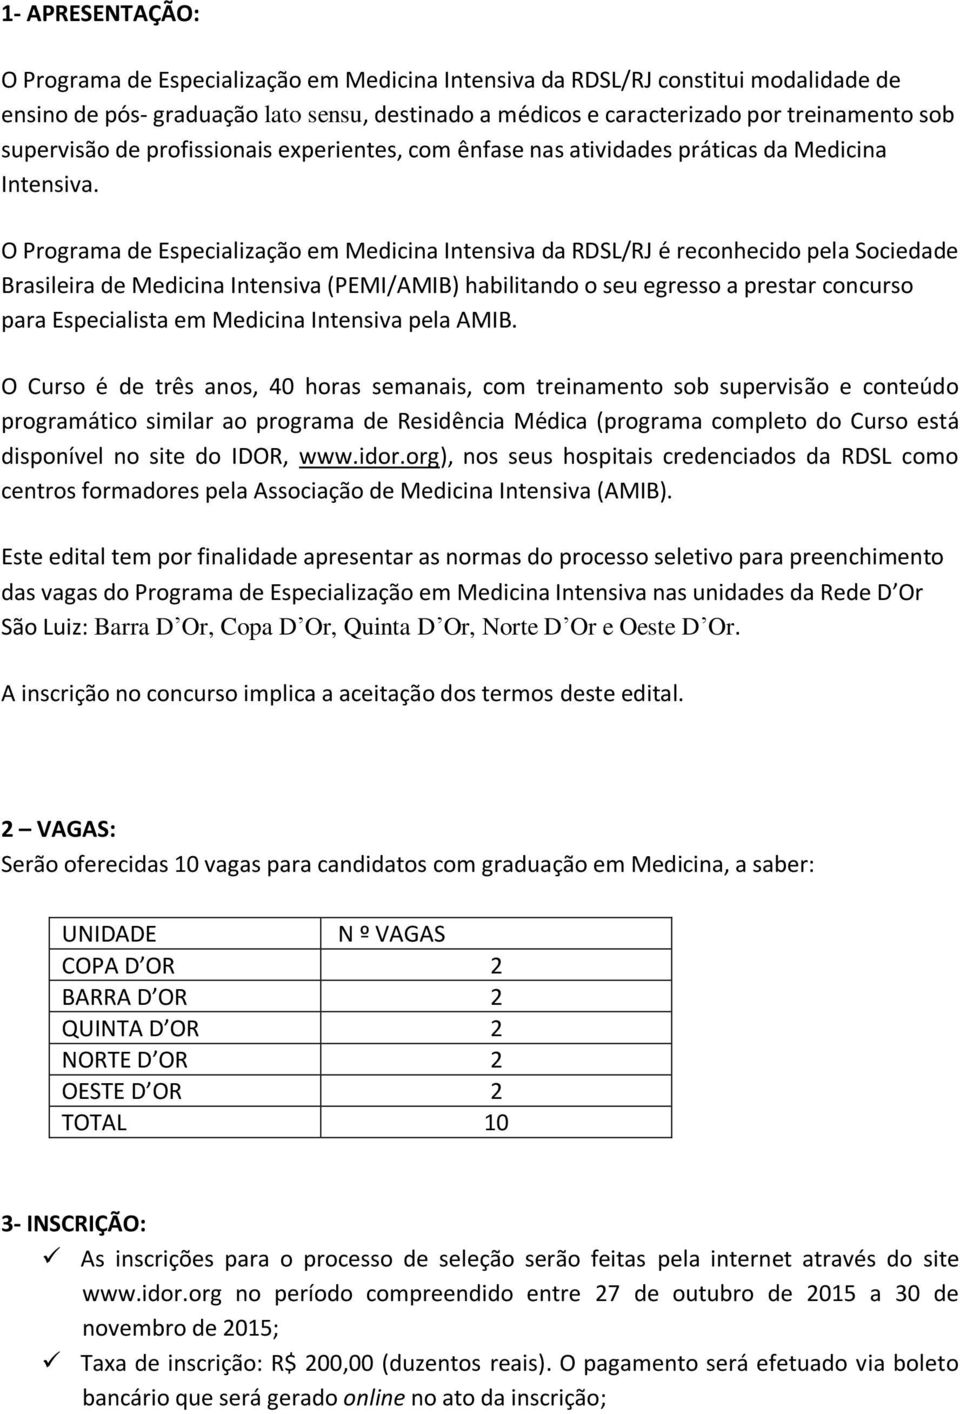 O Programa de Especializac a o em Medicina Intensiva da RDSL/RJ e reconhecido pela Sociedade Brasileira de Medicina Intensiva (PEMI/AMIB) habilitando o seu egresso a prestar concurso para